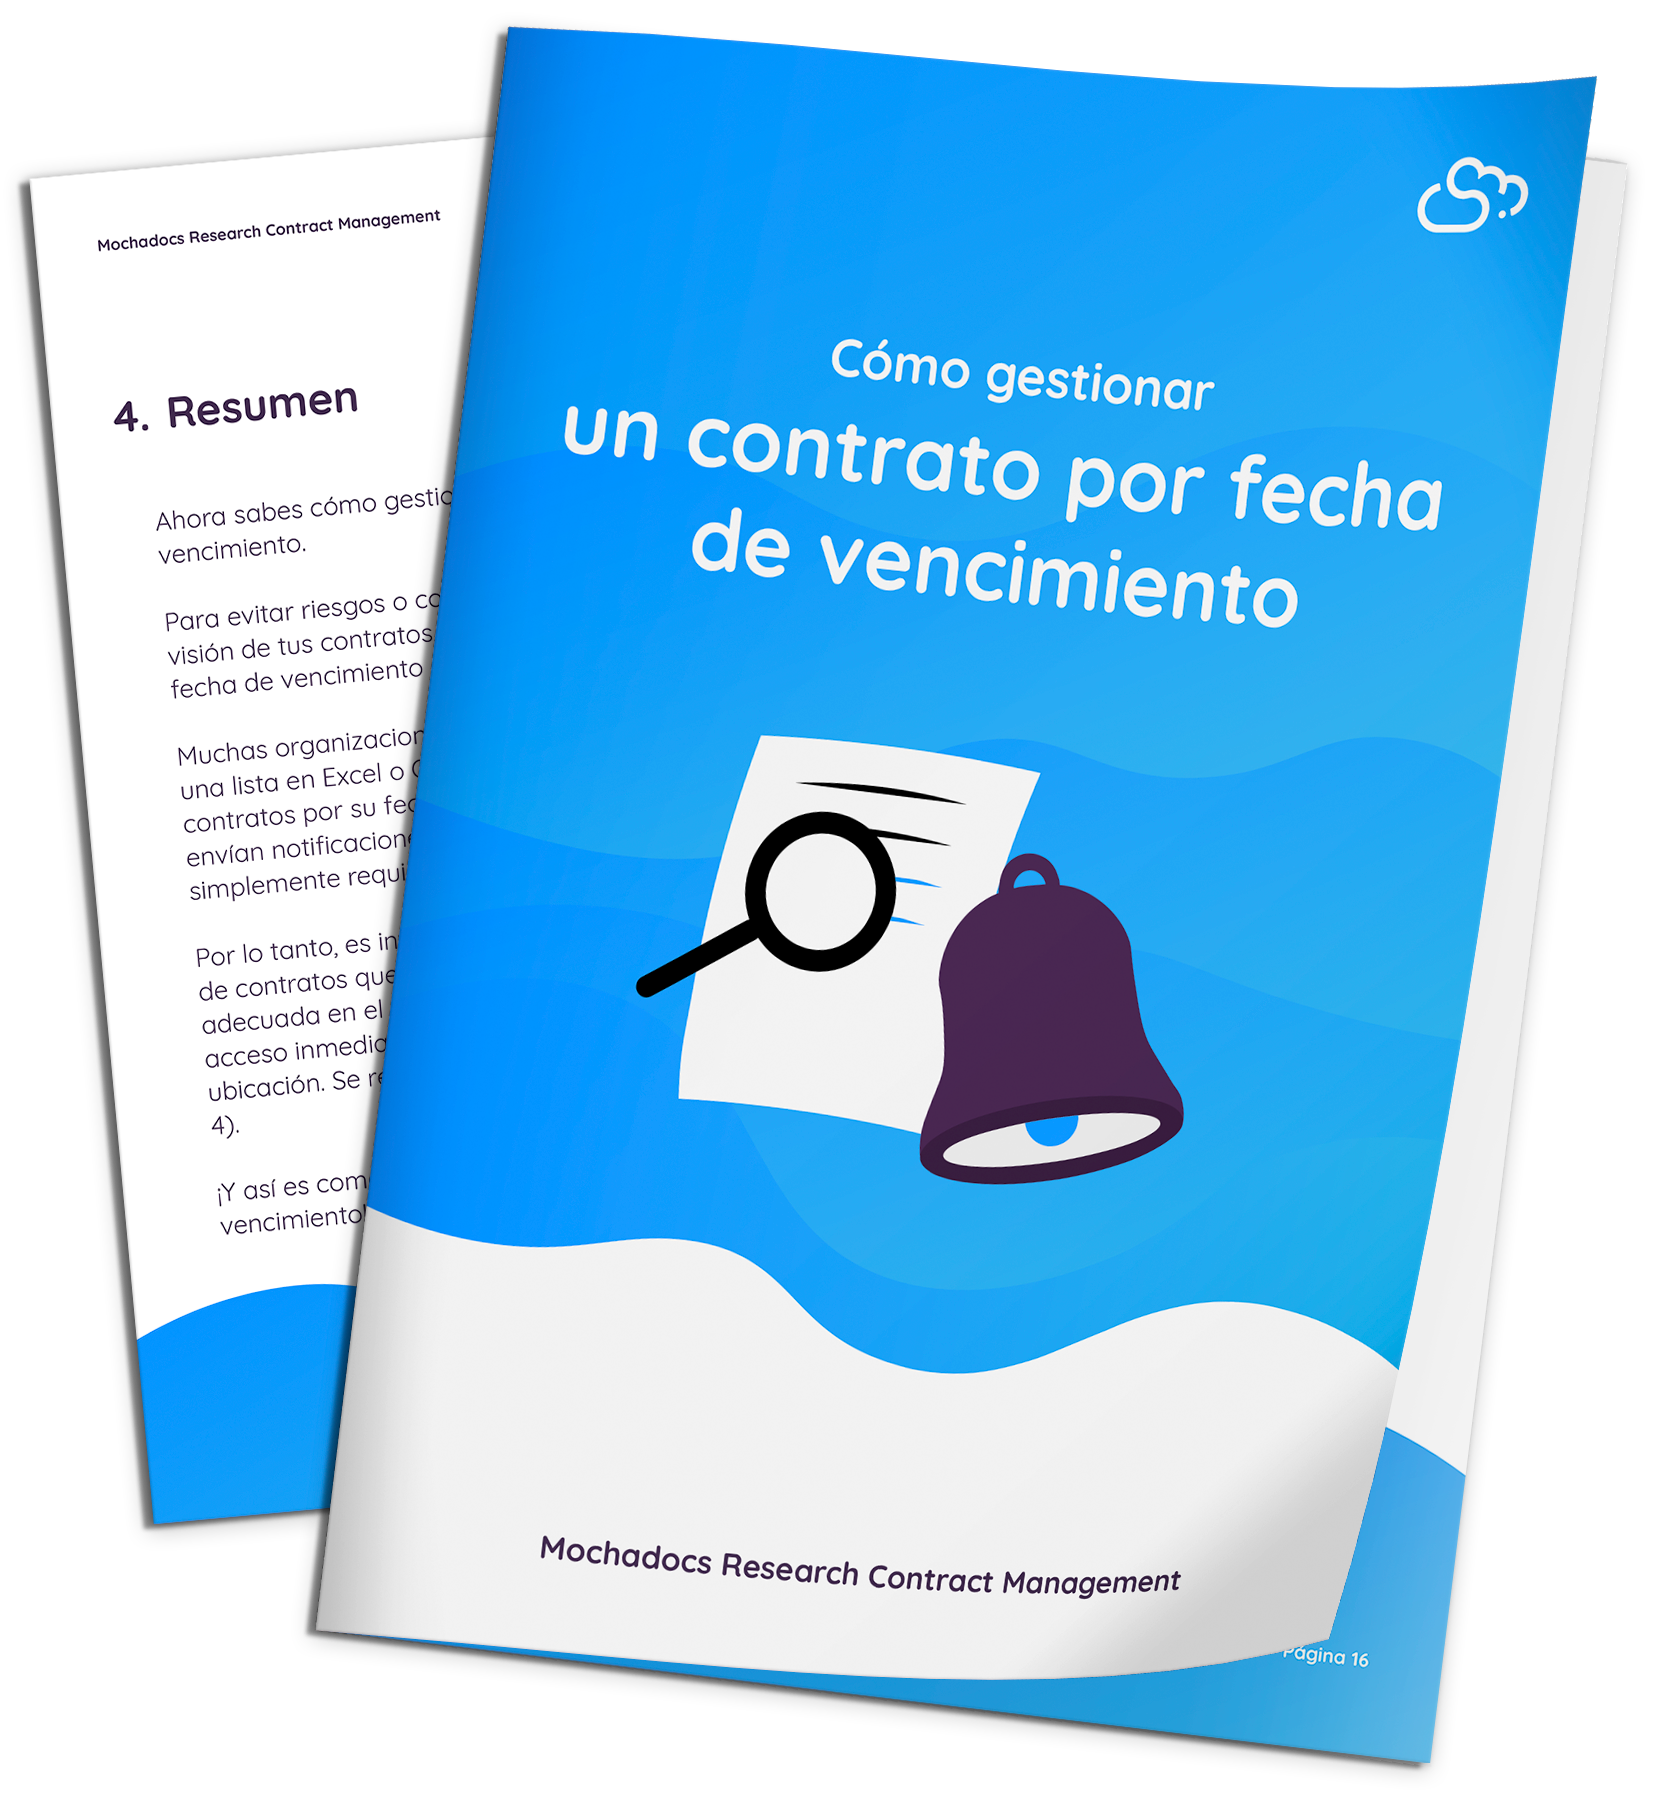 Mochadocs - Contract Management - eBook - Cómo gestionar un contrato por fecha de vencimiento